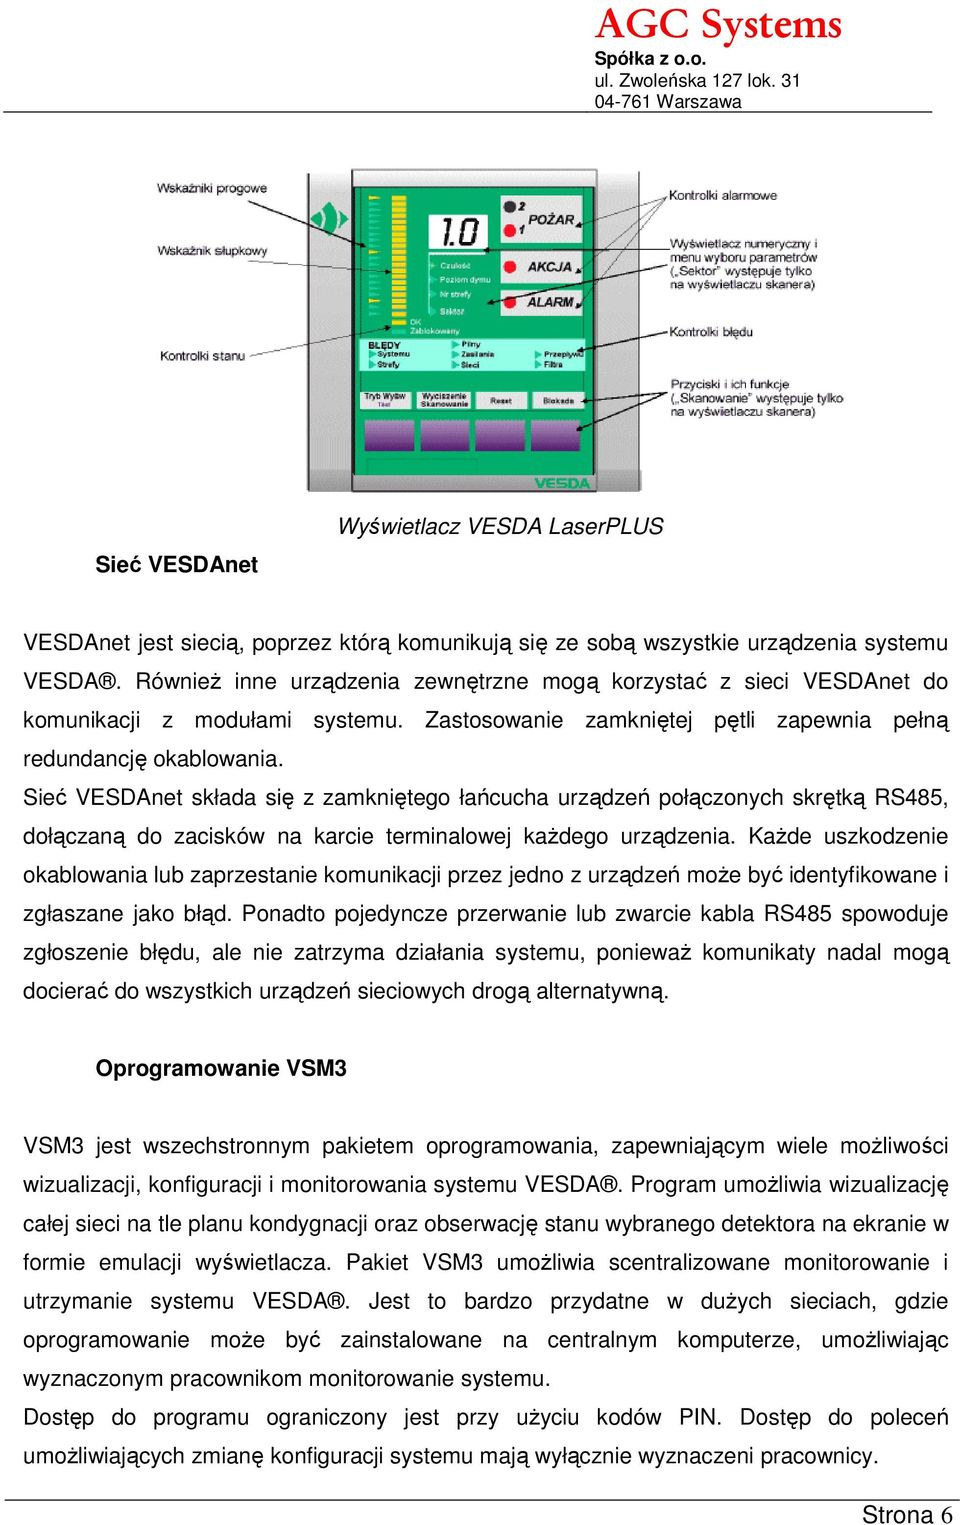 Sieć VESDAnet składa się z zamkniętego łańcucha urządzeń połączonych skrętką RS485, dołączaną do zacisków na karcie terminalowej każdego urządzenia.